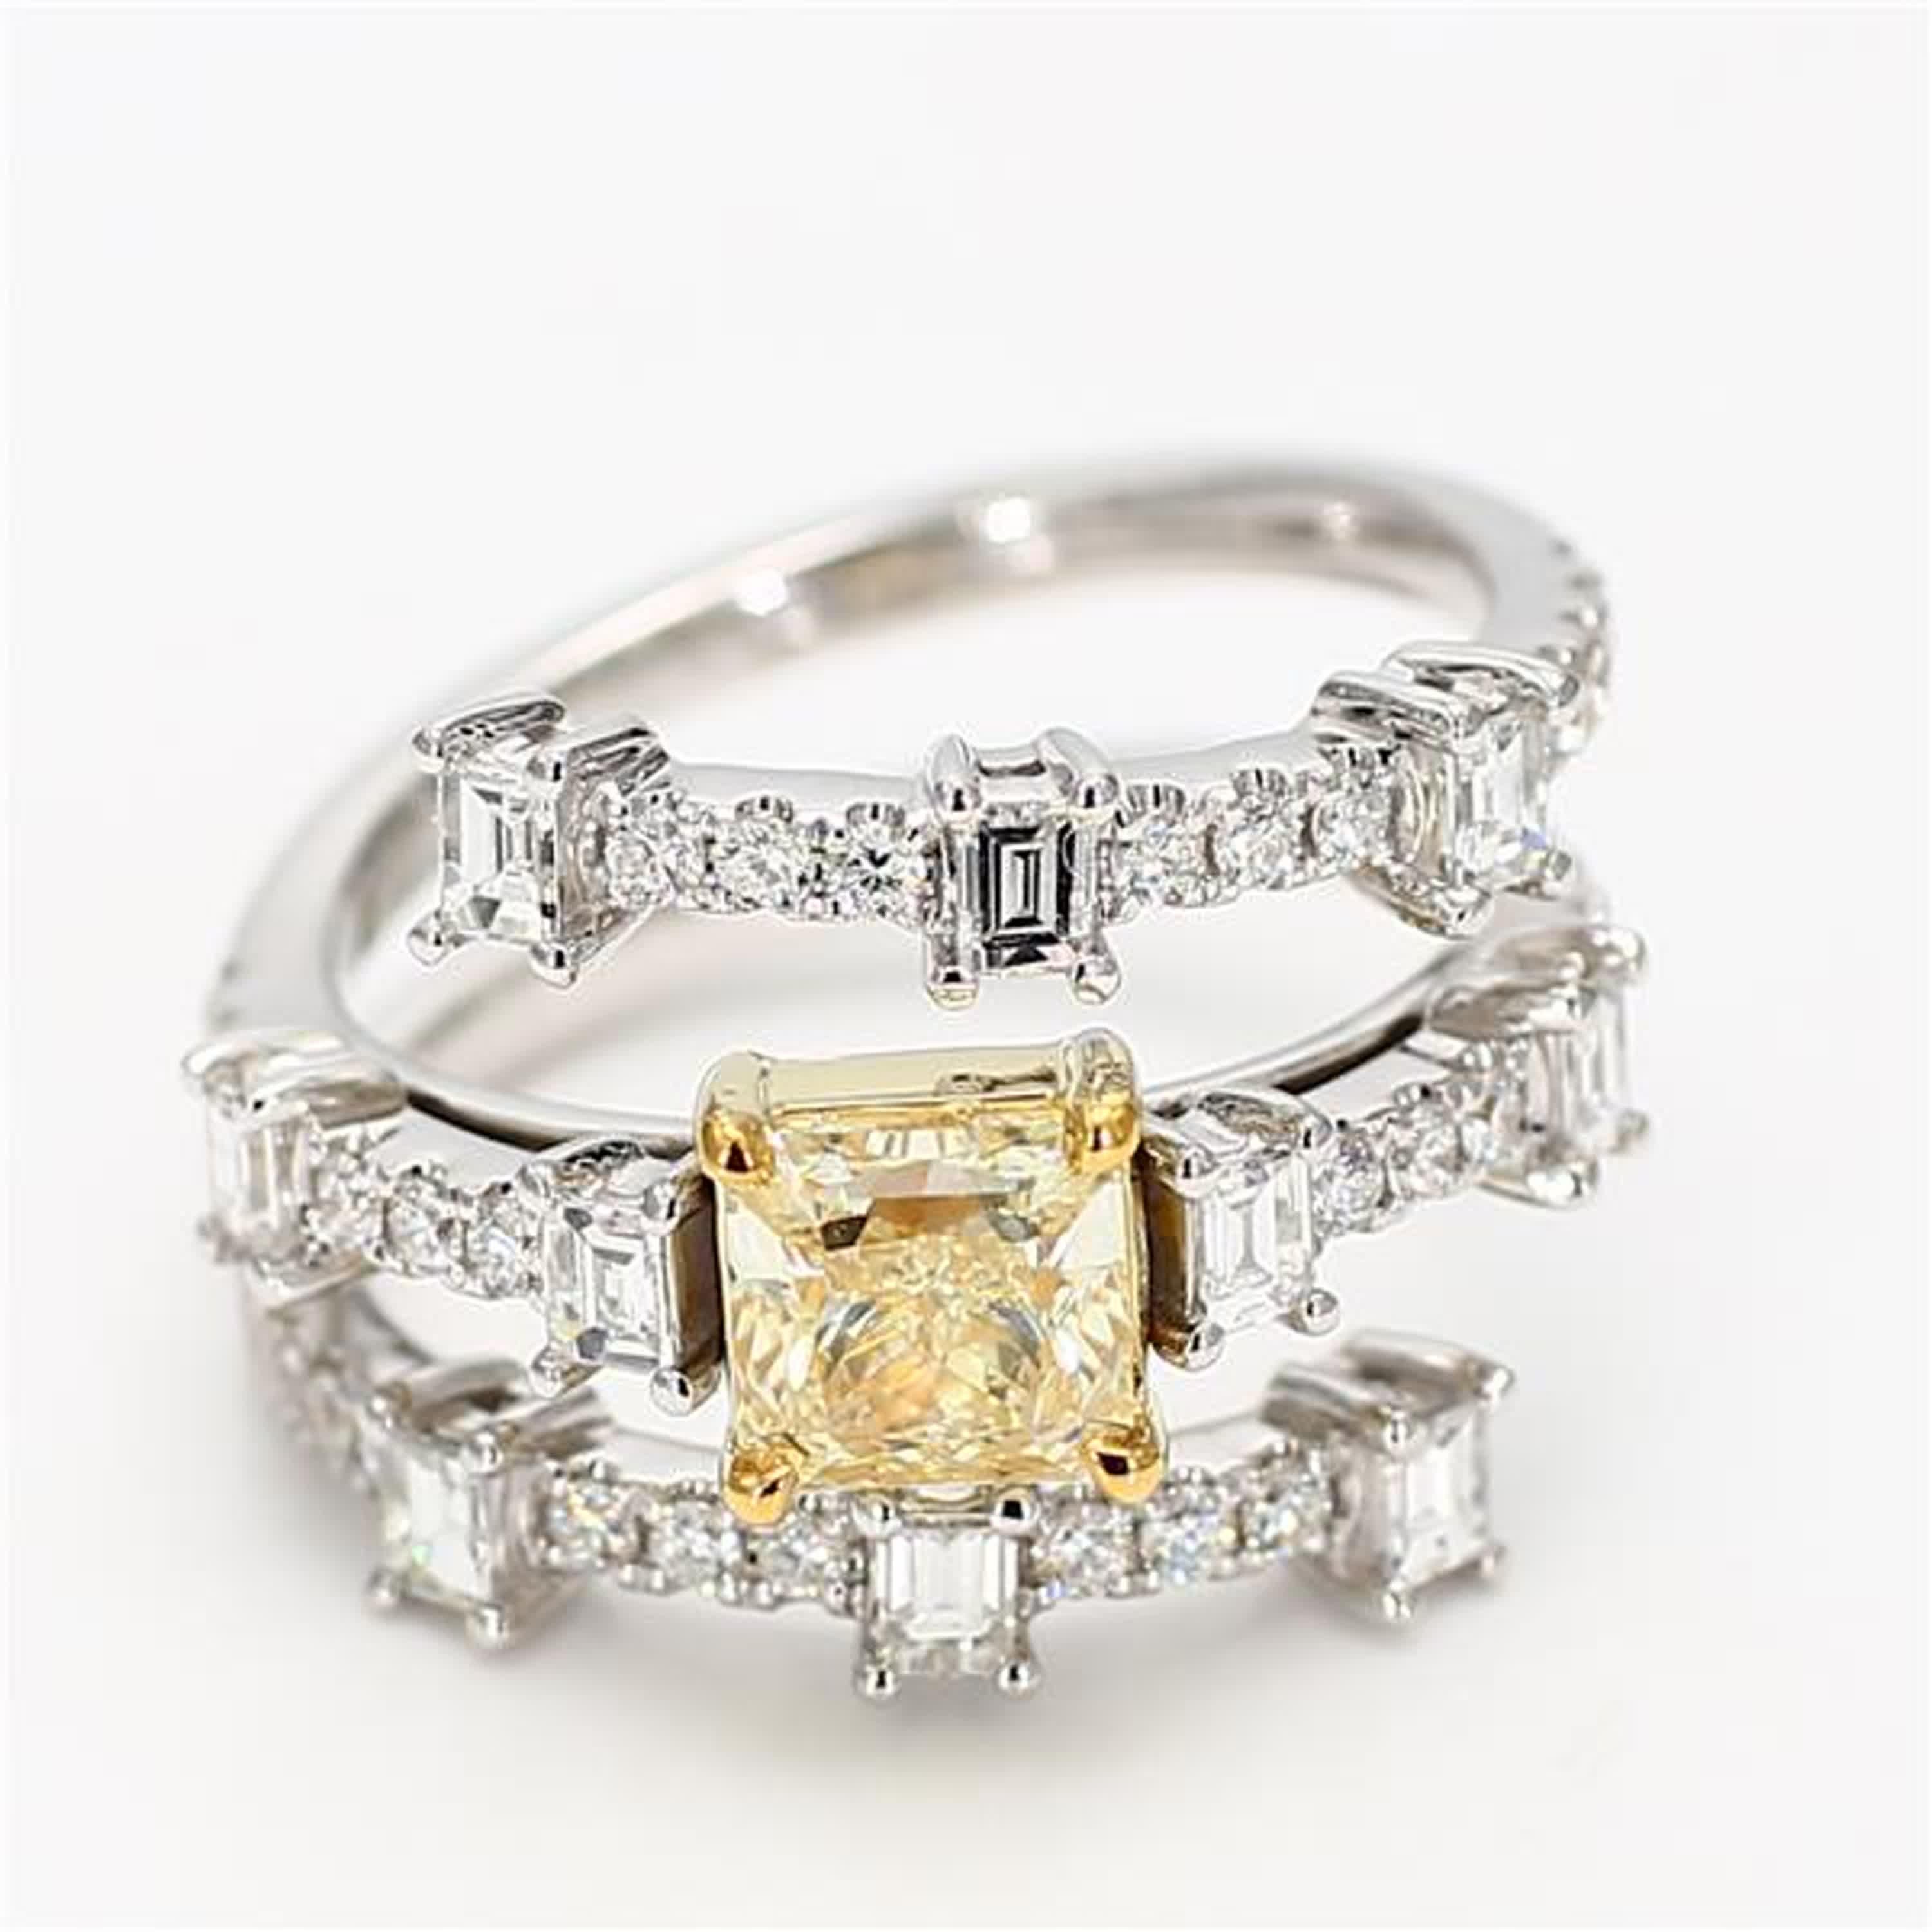 La bague classique en diamant certifiée GIA de Raregemworld. Monté dans une belle monture en or jaune et blanc 18 carats avec un diamant jaune naturel de taille radieuse. Le diamant jaune est entouré de diamants blancs de taille baguette et de